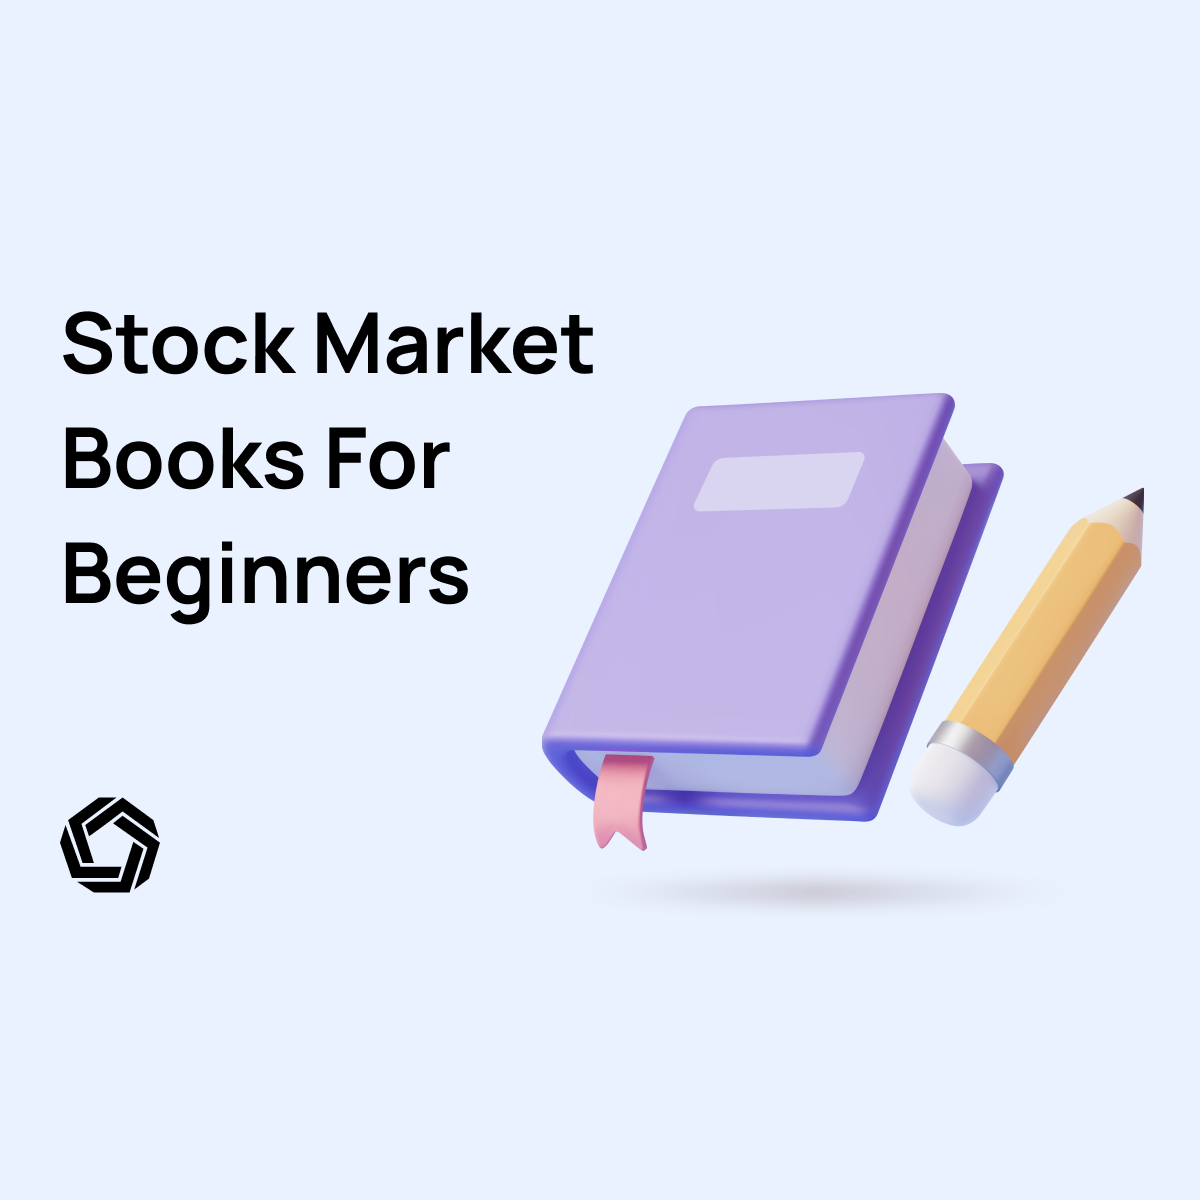 Stock Market Books for Beginners